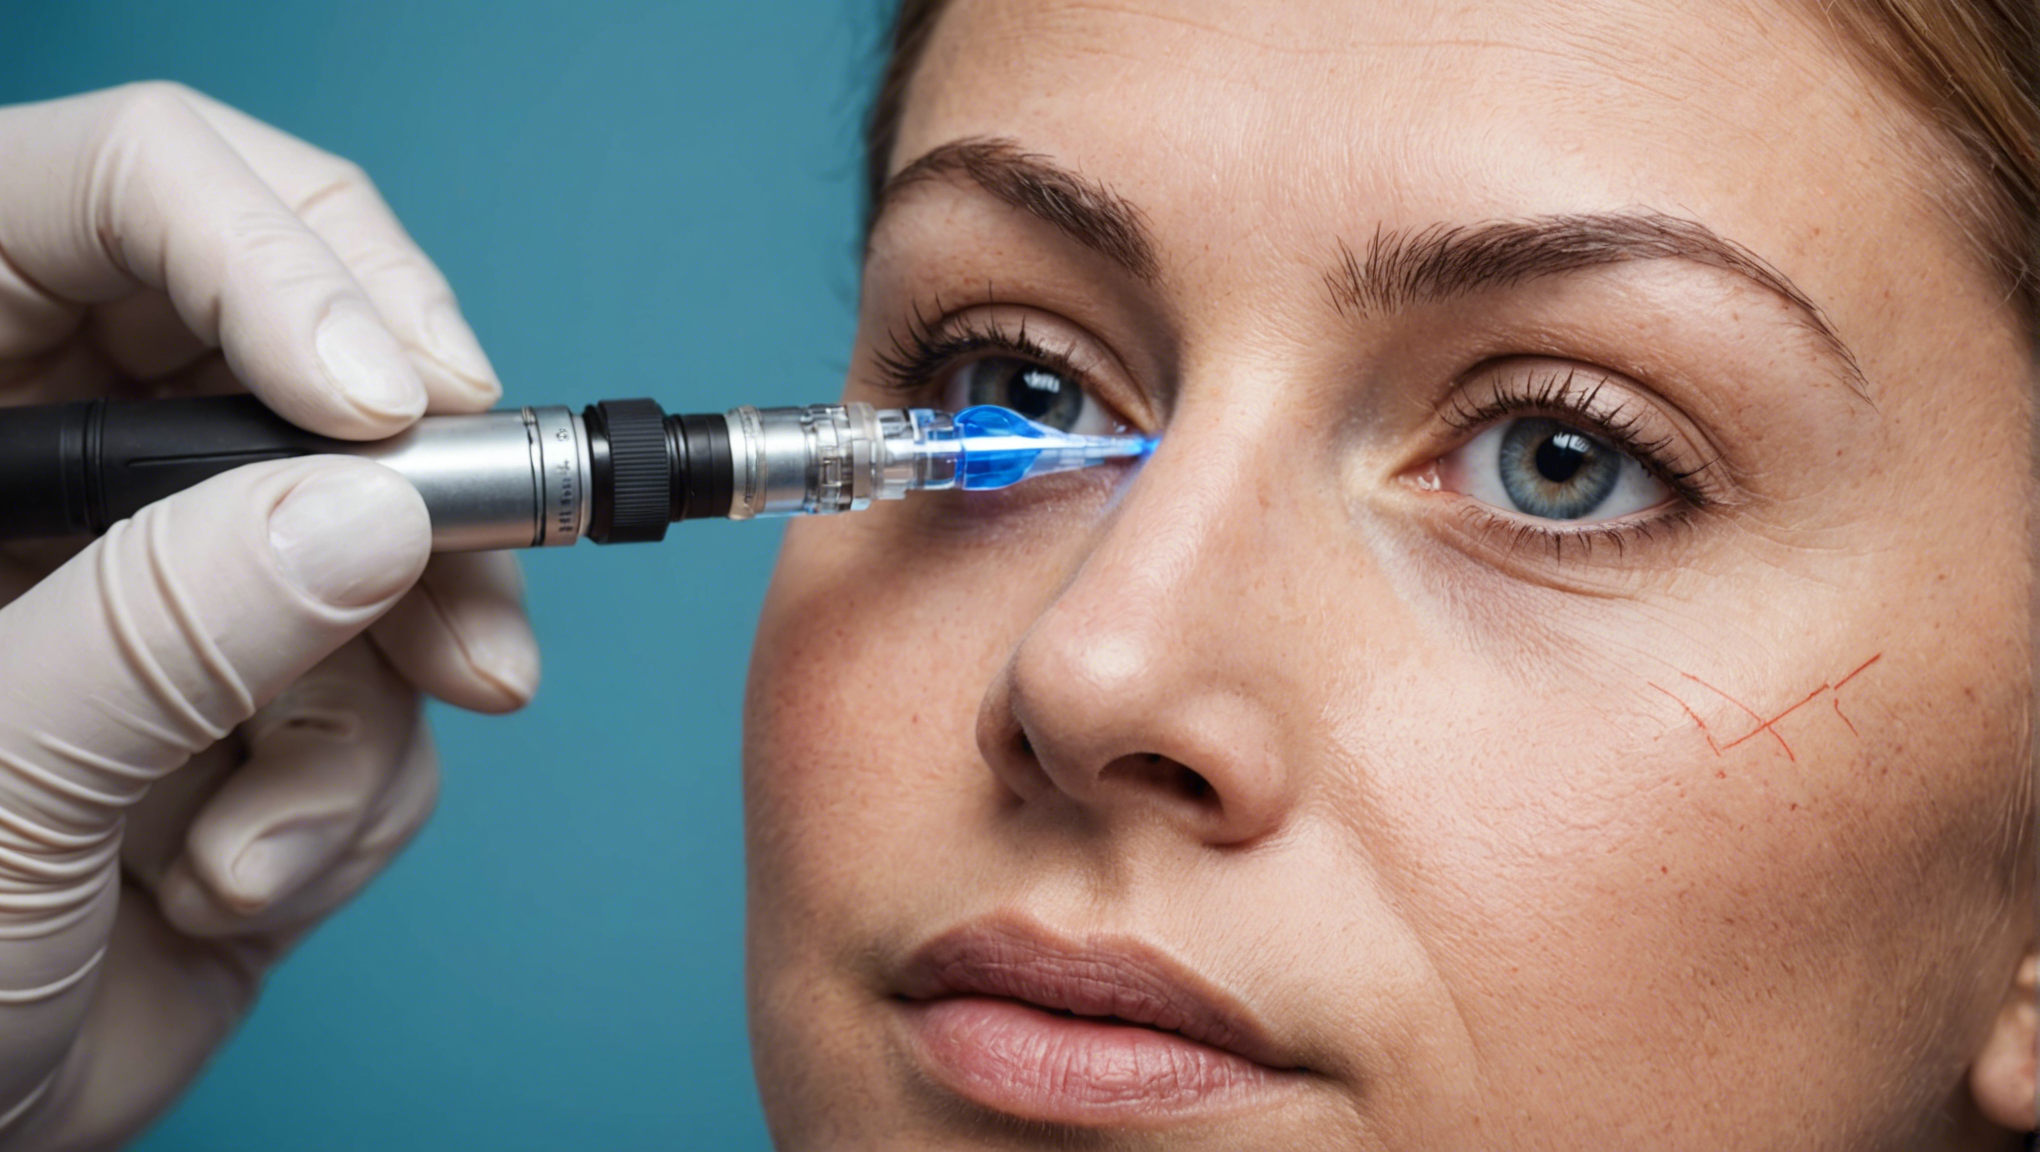 découvrez les différents traitements pour la rétine, du laser aux injections intraoculaires, pour préserver votre vision et traiter les problèmes oculaires.